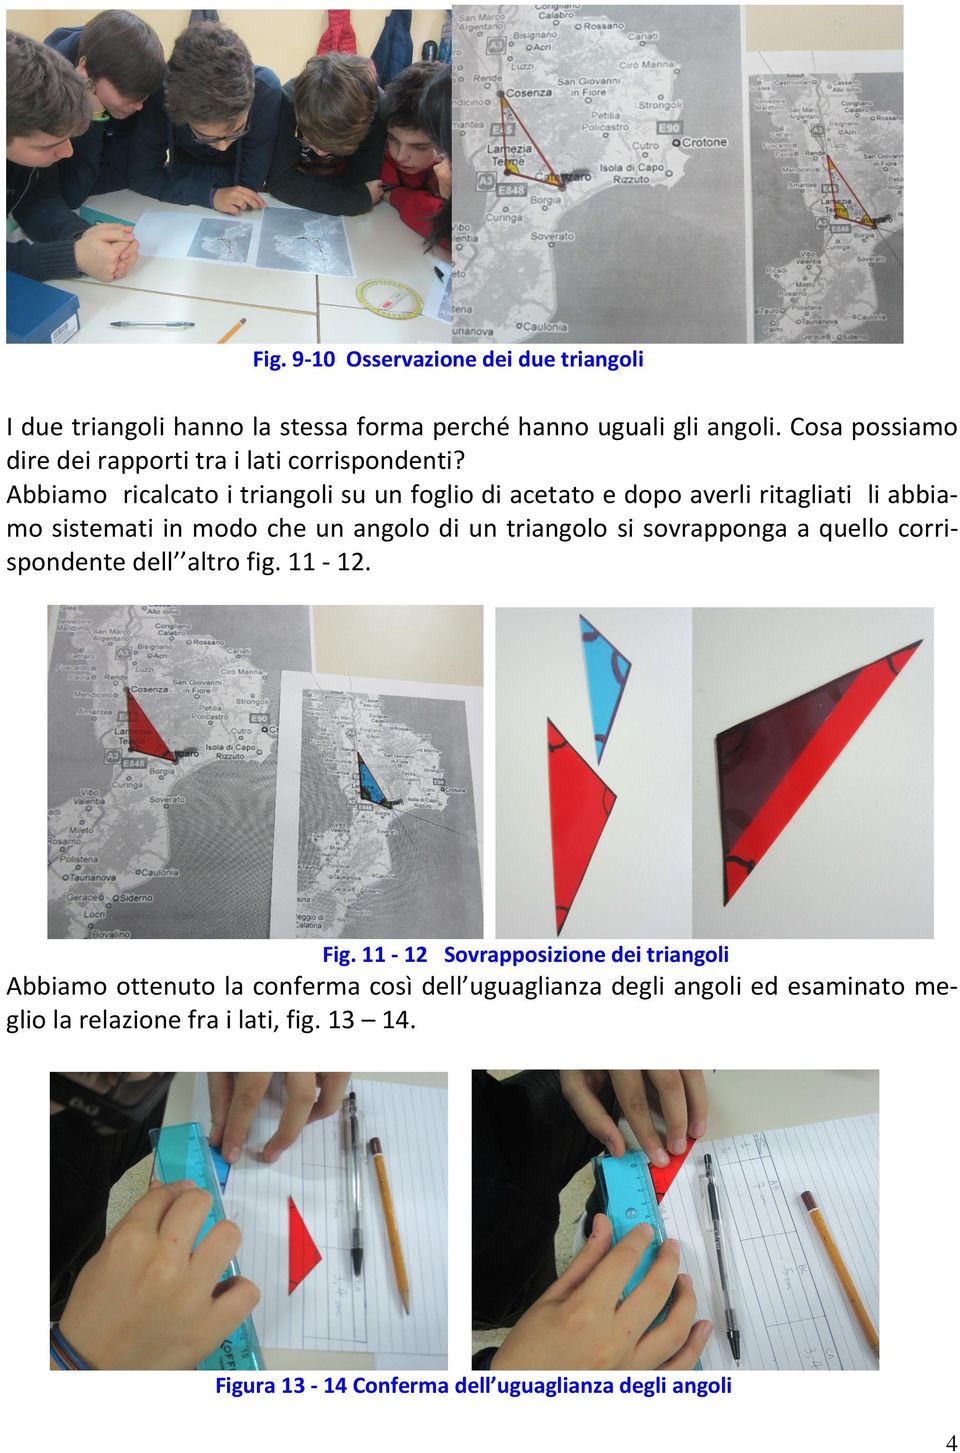 Abbiamo ricalcato i triangoli su un foglio di acetato e dopo averli ritagliati li abbiamo sistemati in modo che un angolo di un triangolo si